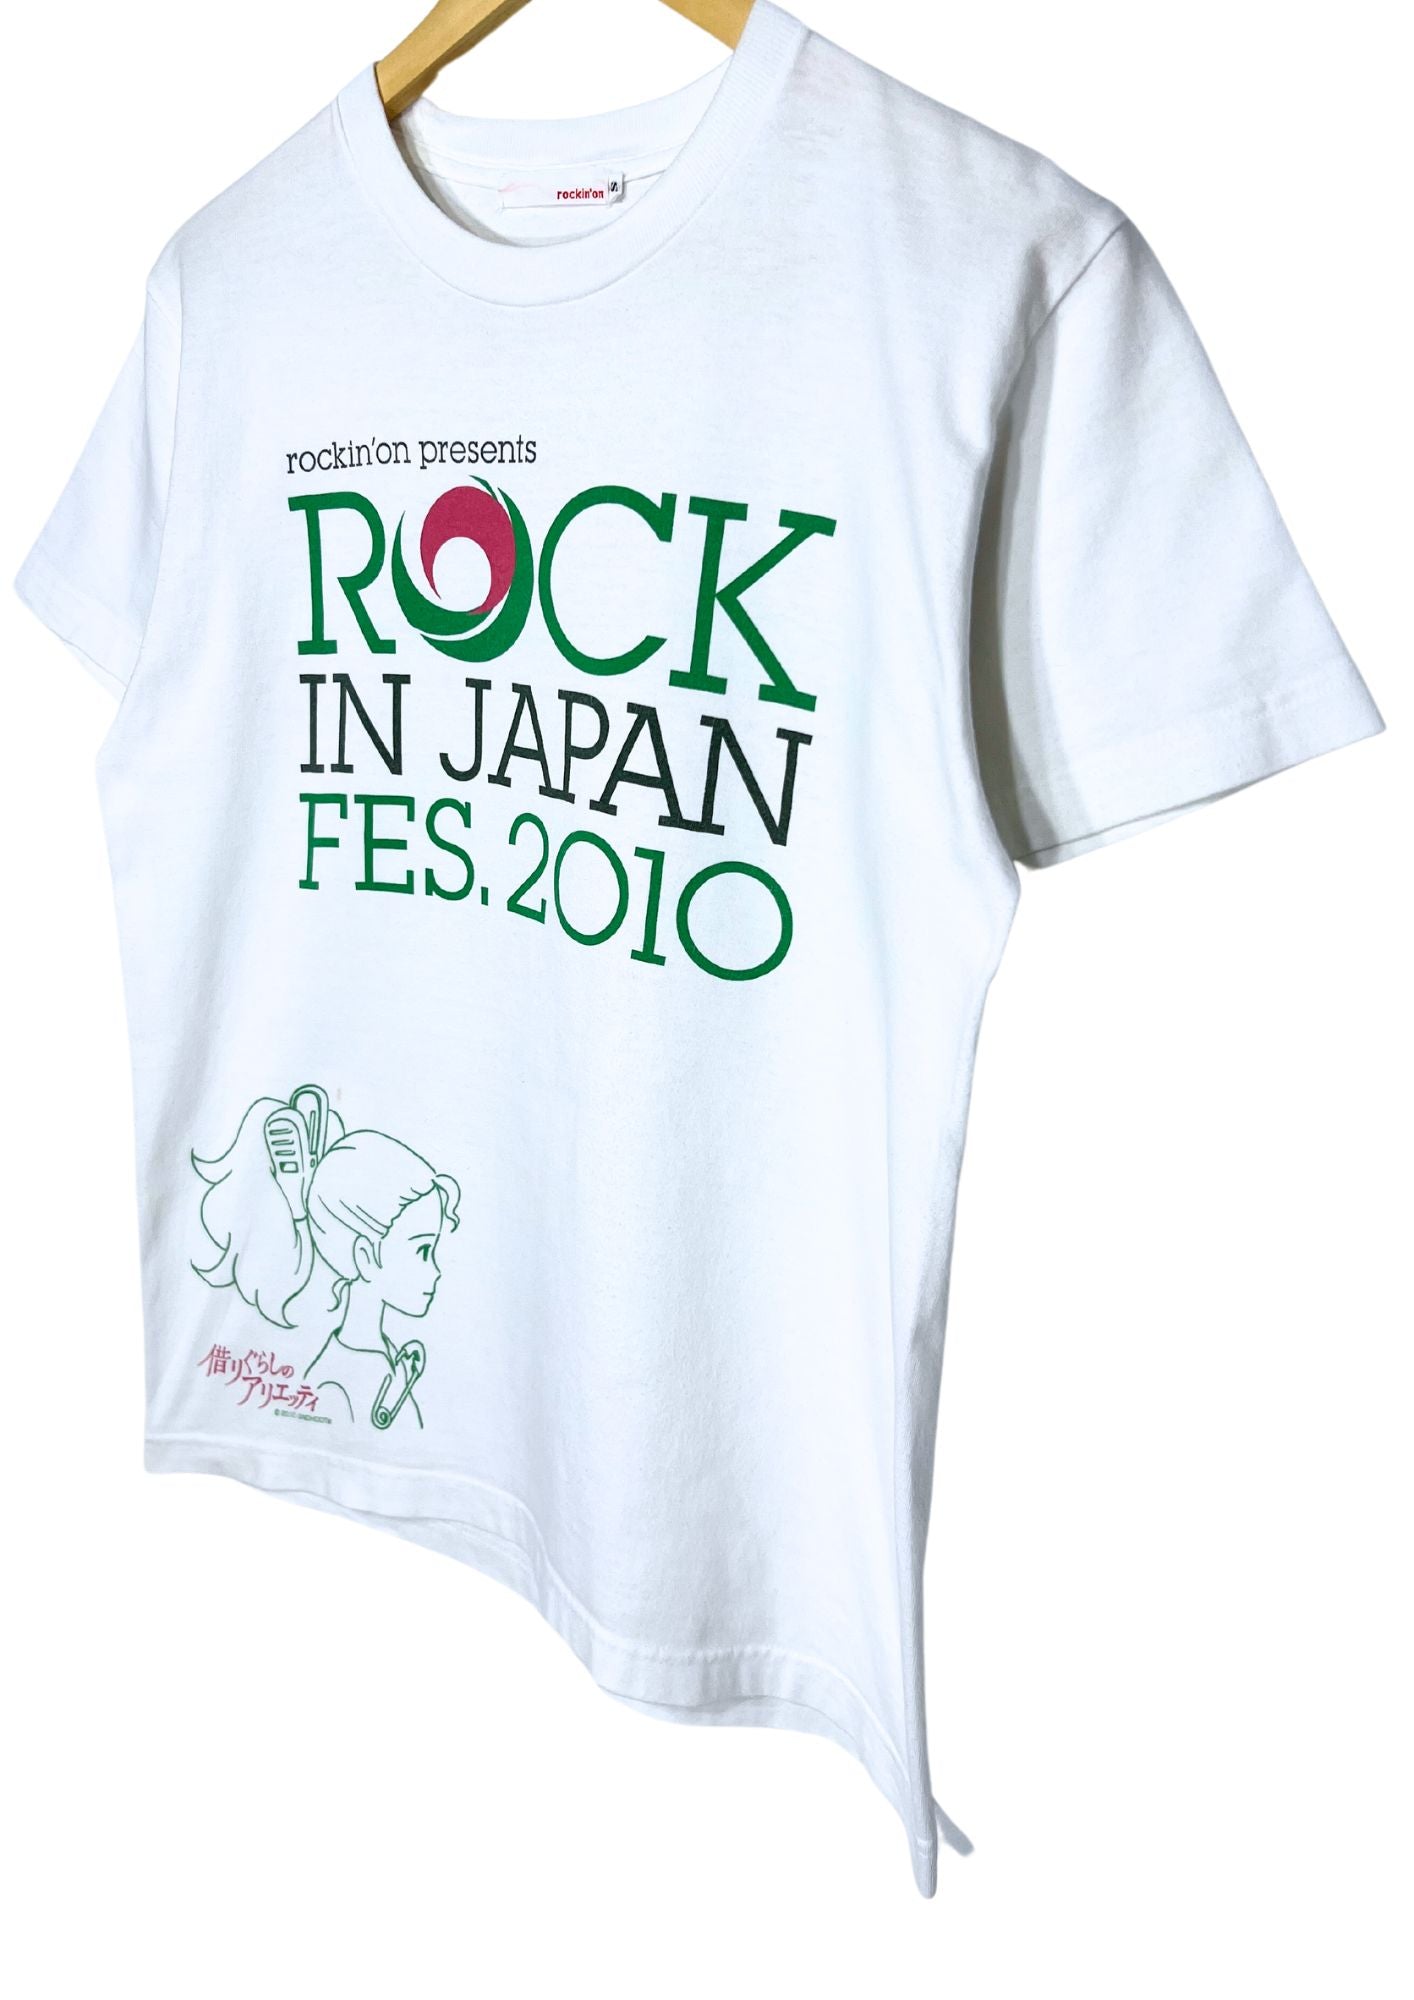 2010 Studio Ghibli Arietty x Rockin'on Rock in Japan Fes, Arietty T-shirt